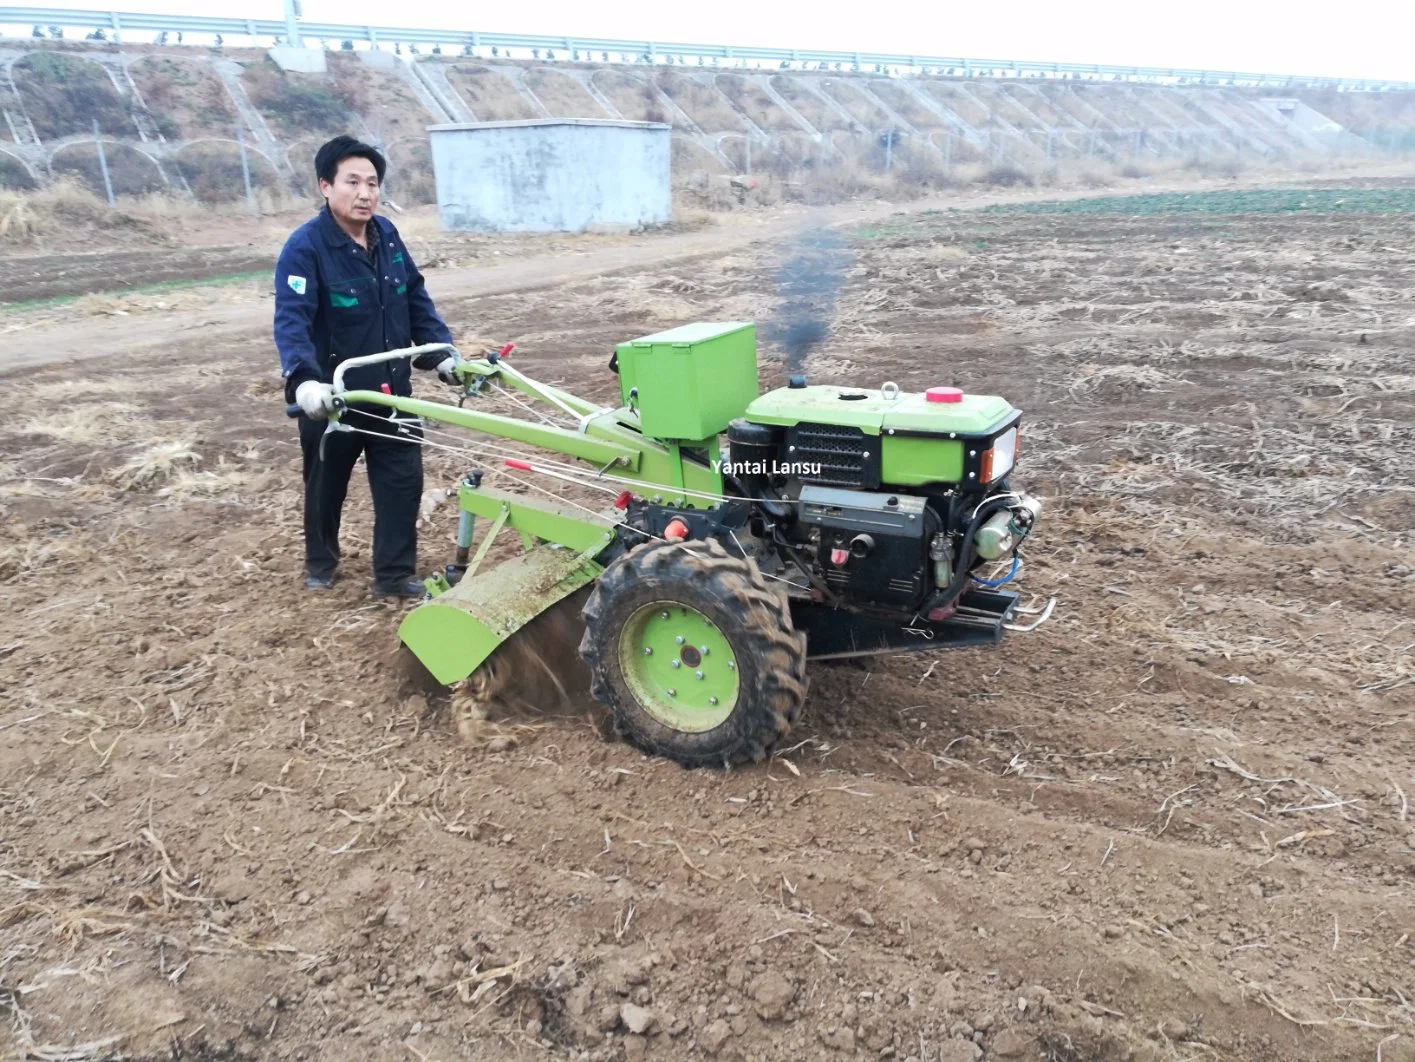 Hand-Traktor mit Drehfräse